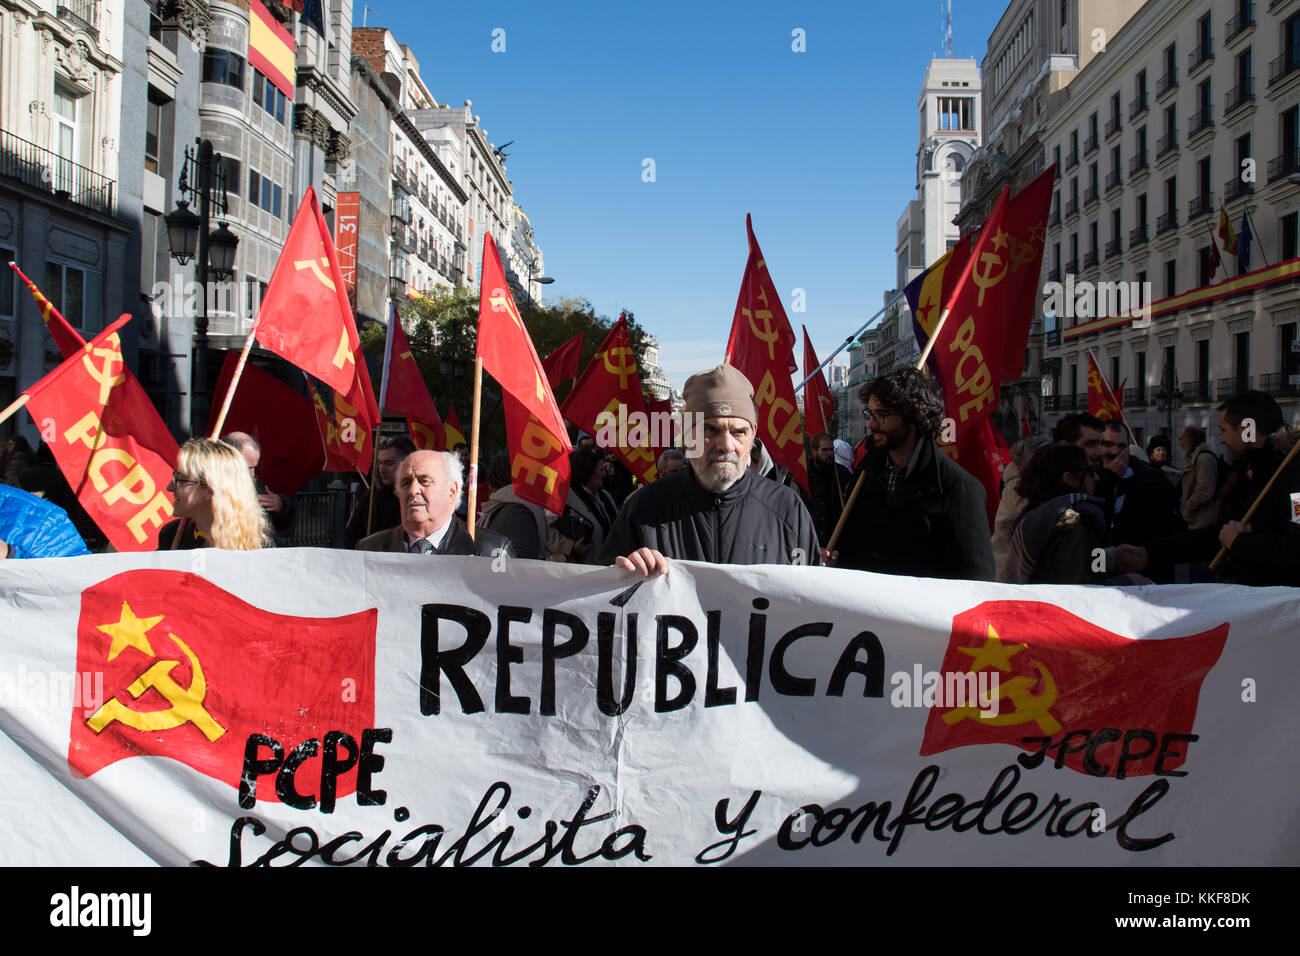 Madrid, España. El 6 de diciembre de 2017. bandera del partido comunista de los pueblos de España (PCPE) durante la manifestación reclamando la tercera República española, celebrada en Madrid. © valentin sama-rojo/alamy live news. Foto de stock